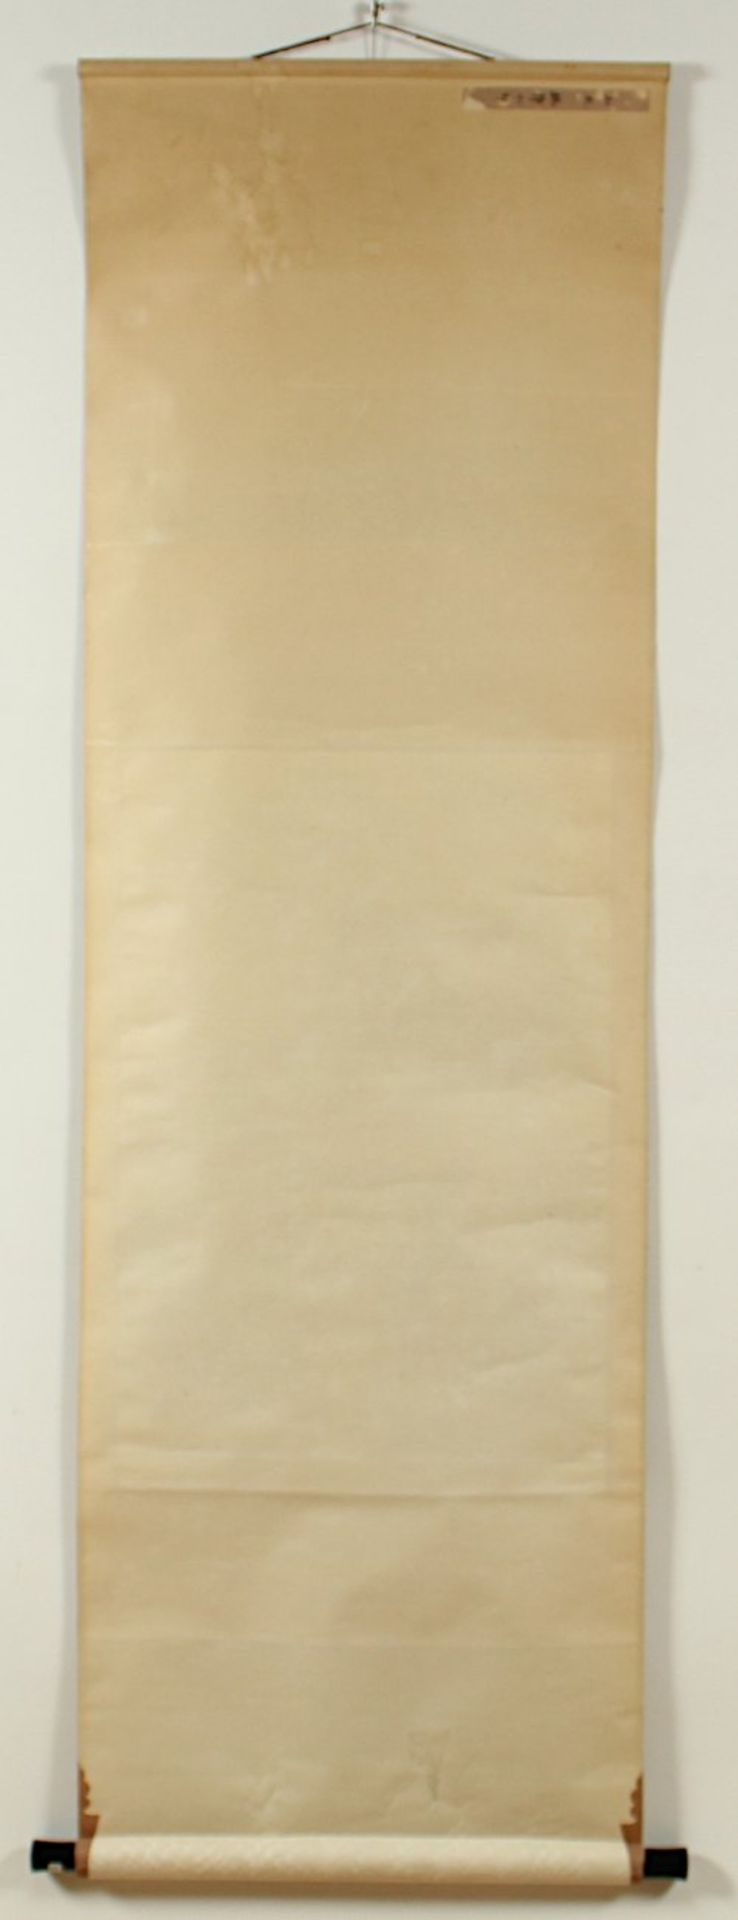 ROLLBILD, Tusche und Farben auf Papier, Landschaft, Aufschrift und Siegel, 68 x 45, montiert, CHINA, - Bild 4 aus 4